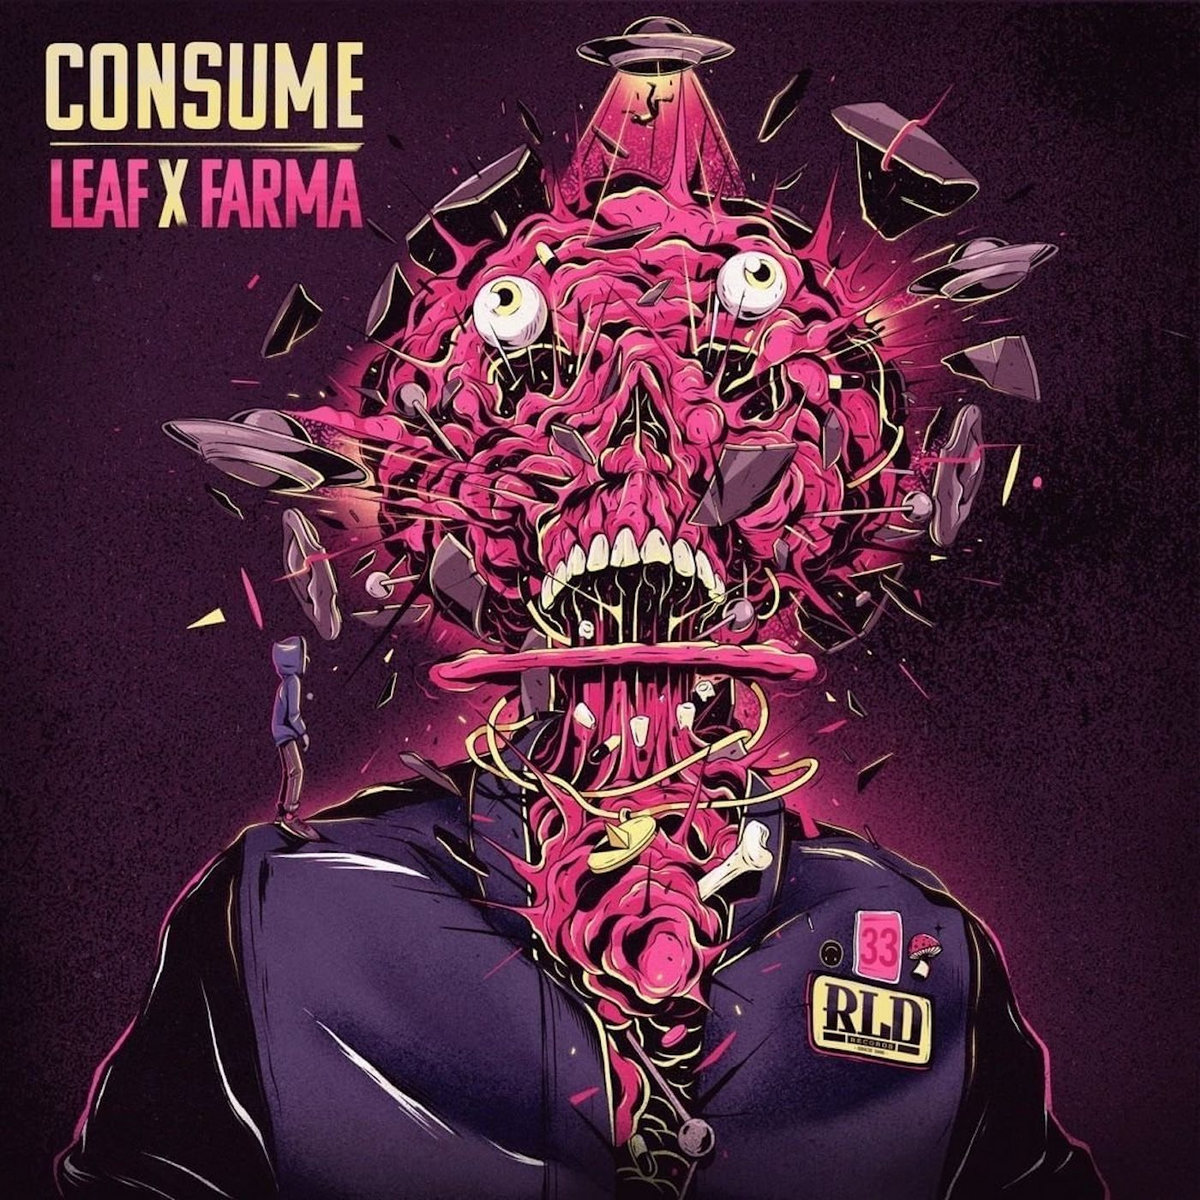 Leaf_x_farma_consume